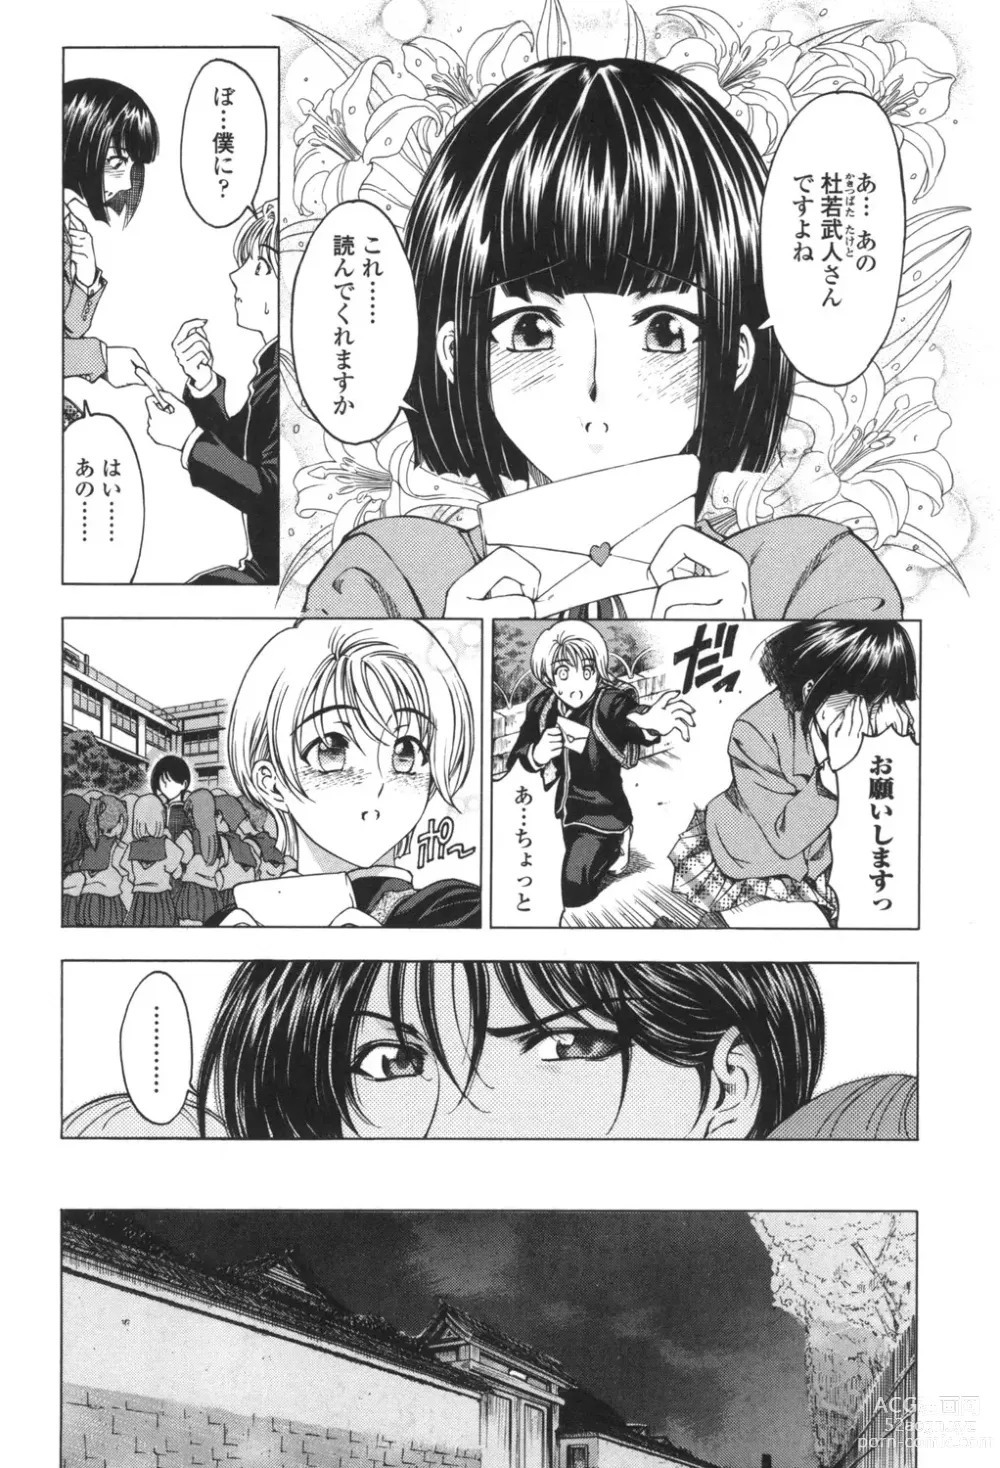 Page 12 of manga Maruimo!?